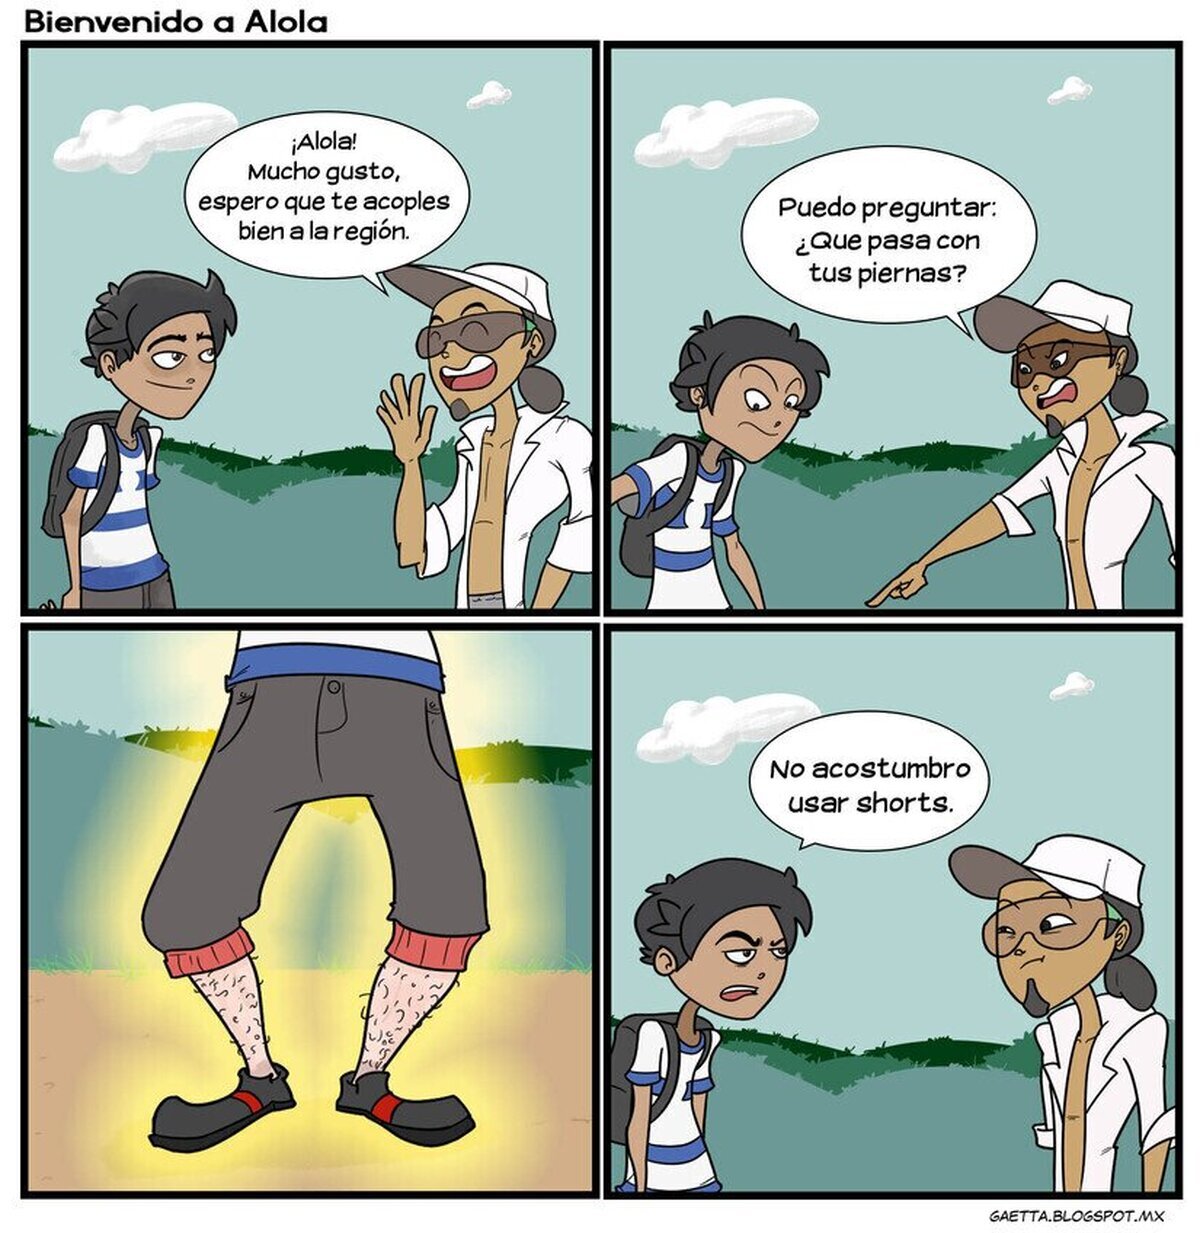 El problema con los shorts